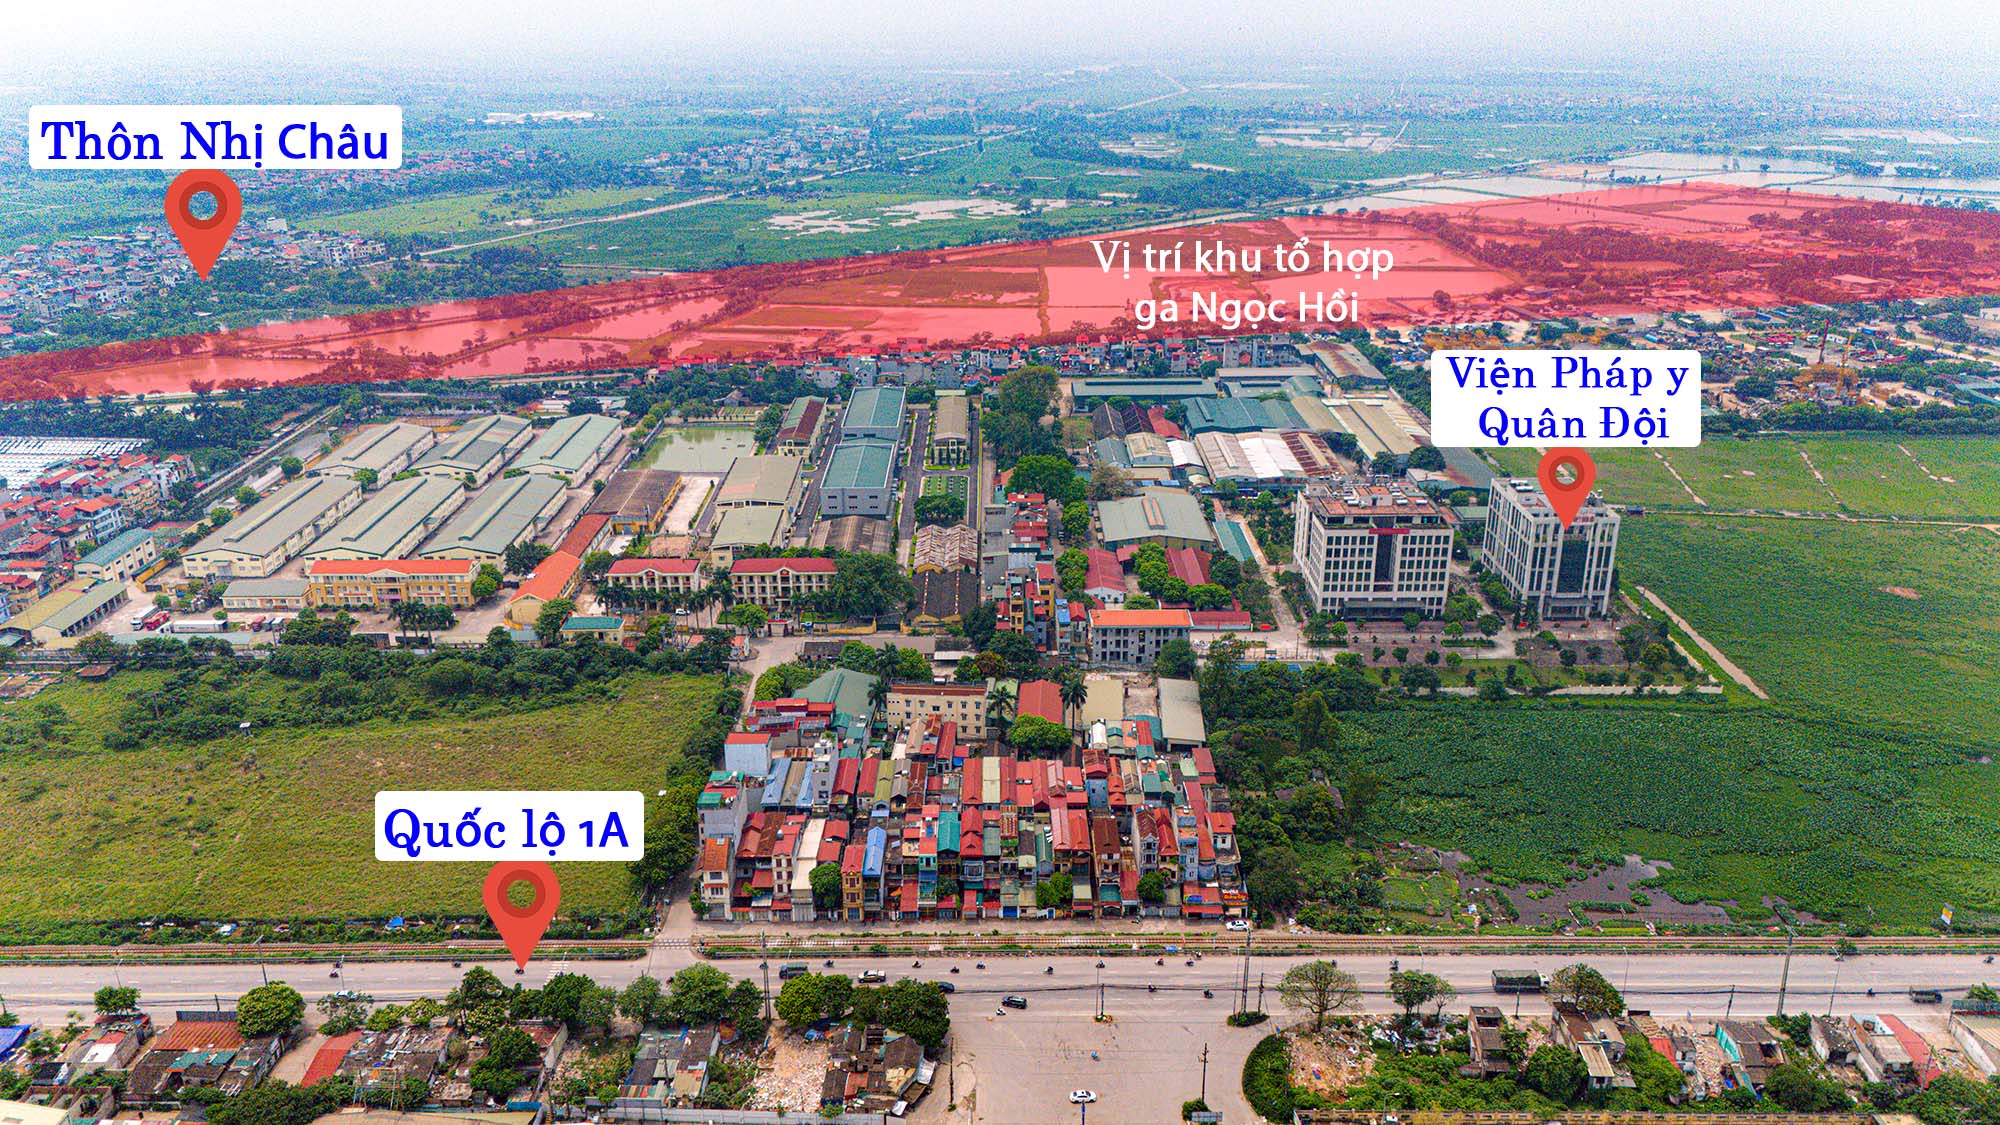 Hà Nội: Toàn cảnh khu đất sẽ được xây dựng tổ hợp ga 19.000 tỷ, là nơi dừng chân của đường sắt tốc độ cao- Ảnh 6.